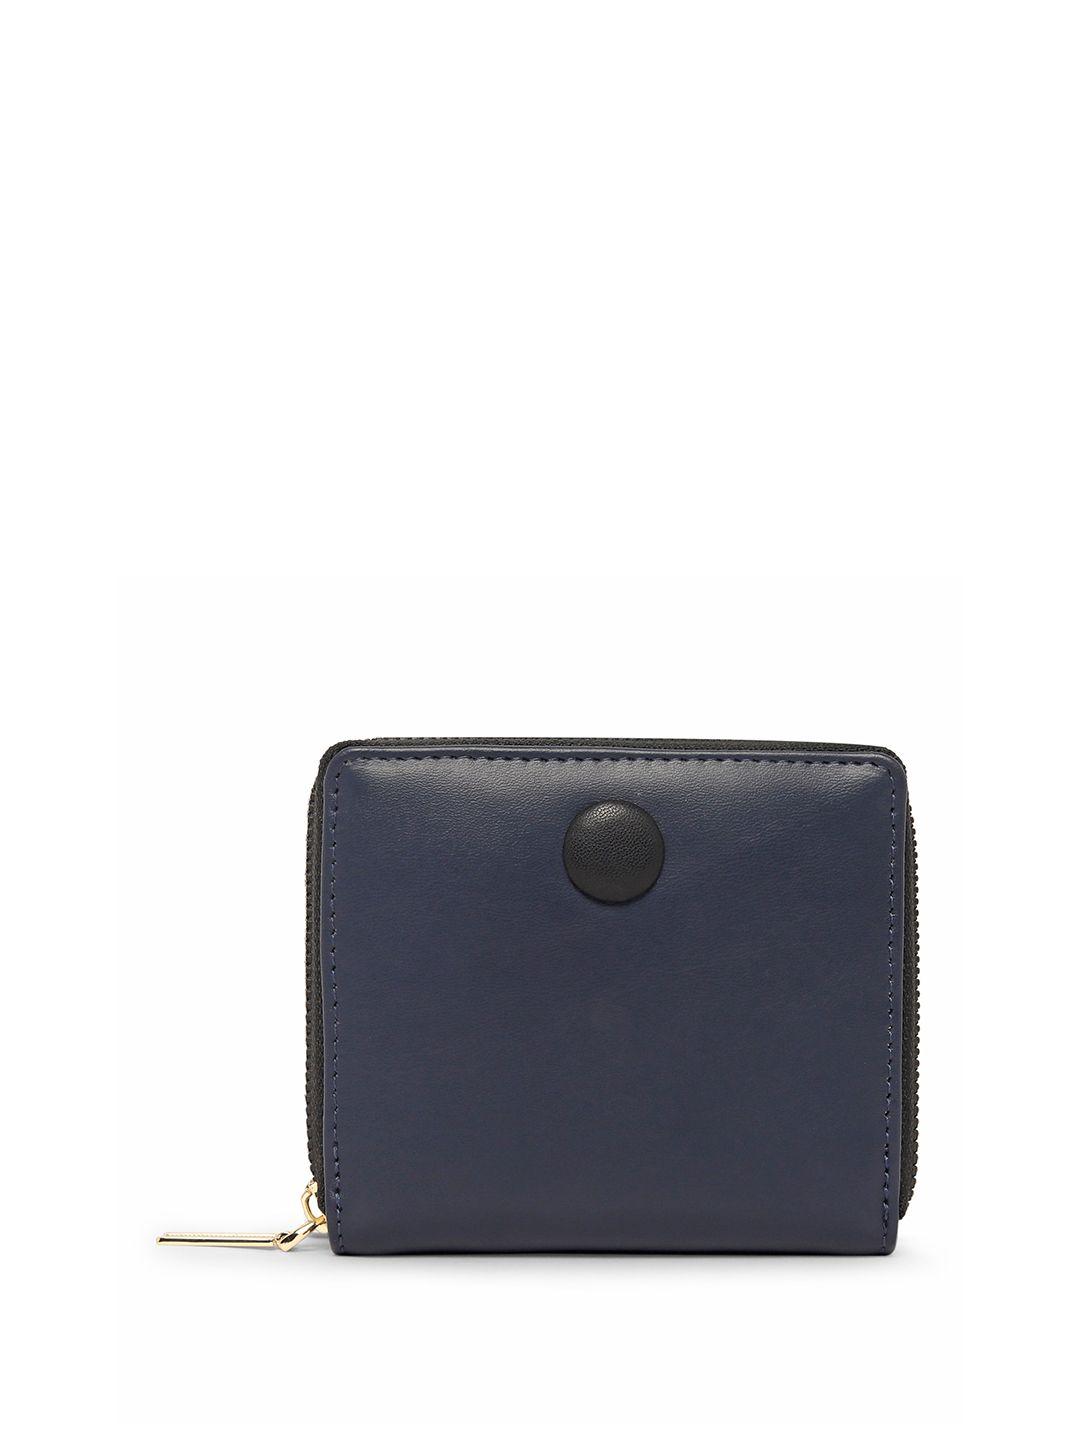 dressberry women navy blue zip around wallet